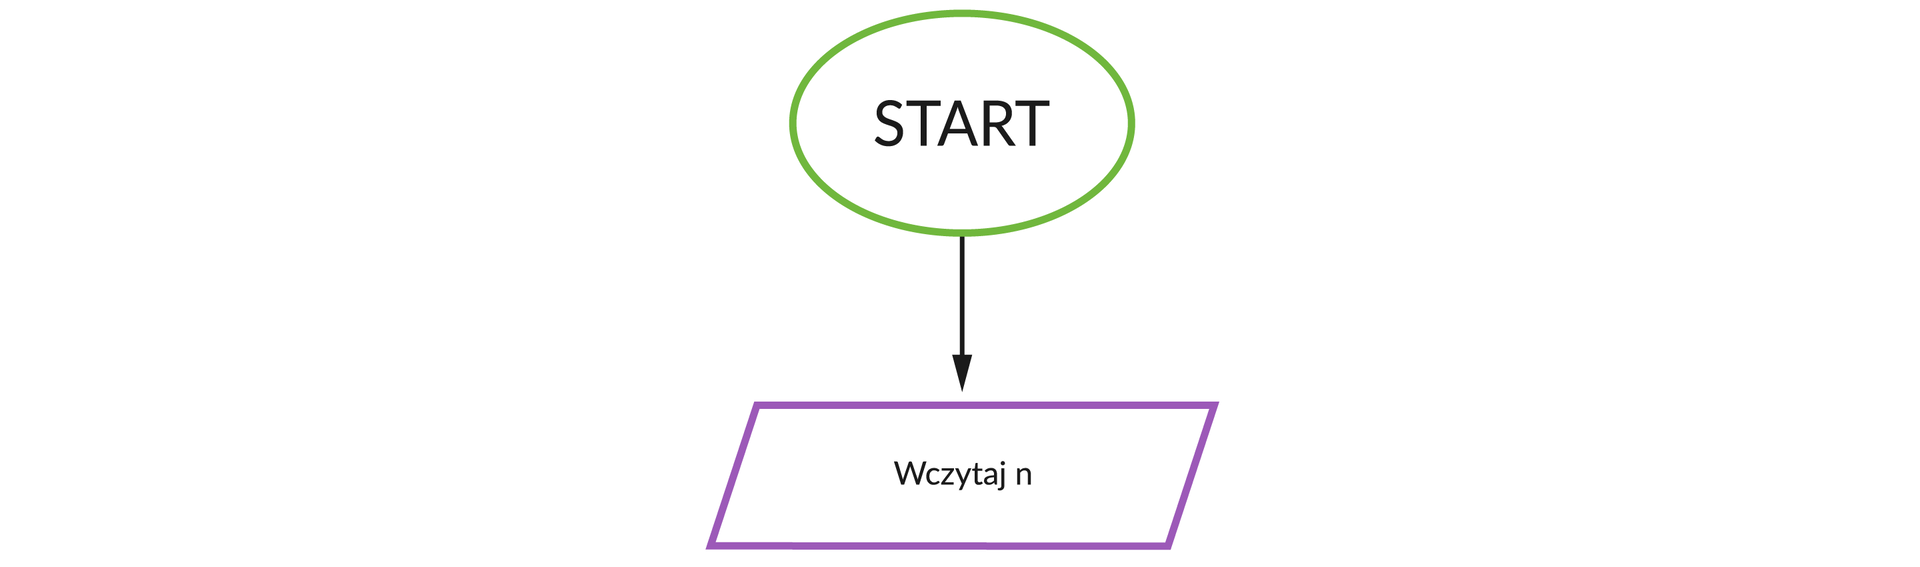 Ilustracja przedstawia schemat blokowy.  1: Zielony okrąg Start.  2: Fioletowy równoległobok Wczytaj n.